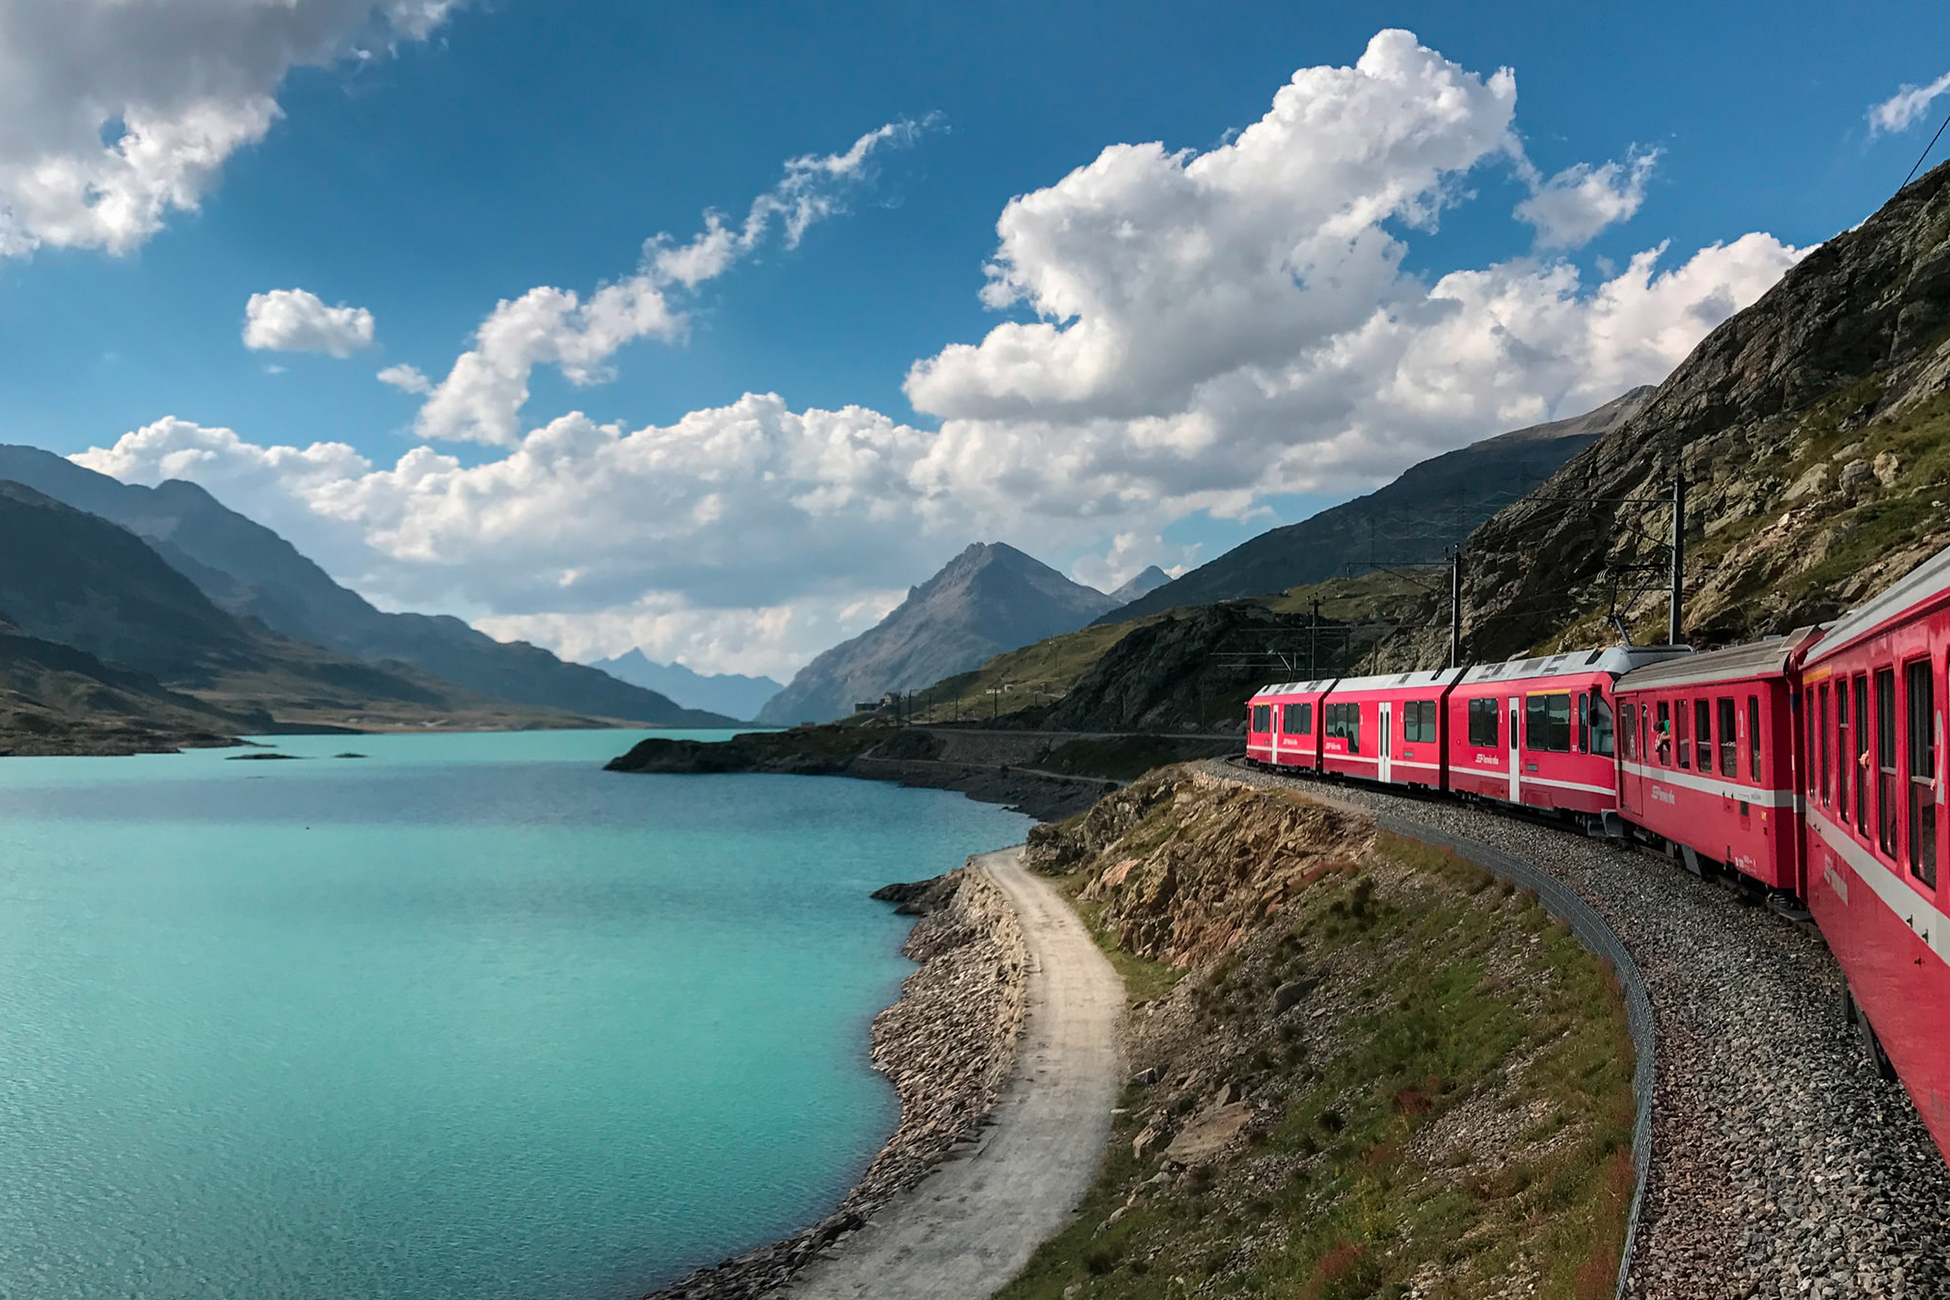 Das Bild zeigt eine Bahn, die in den Alpen einem See vorbeifährt